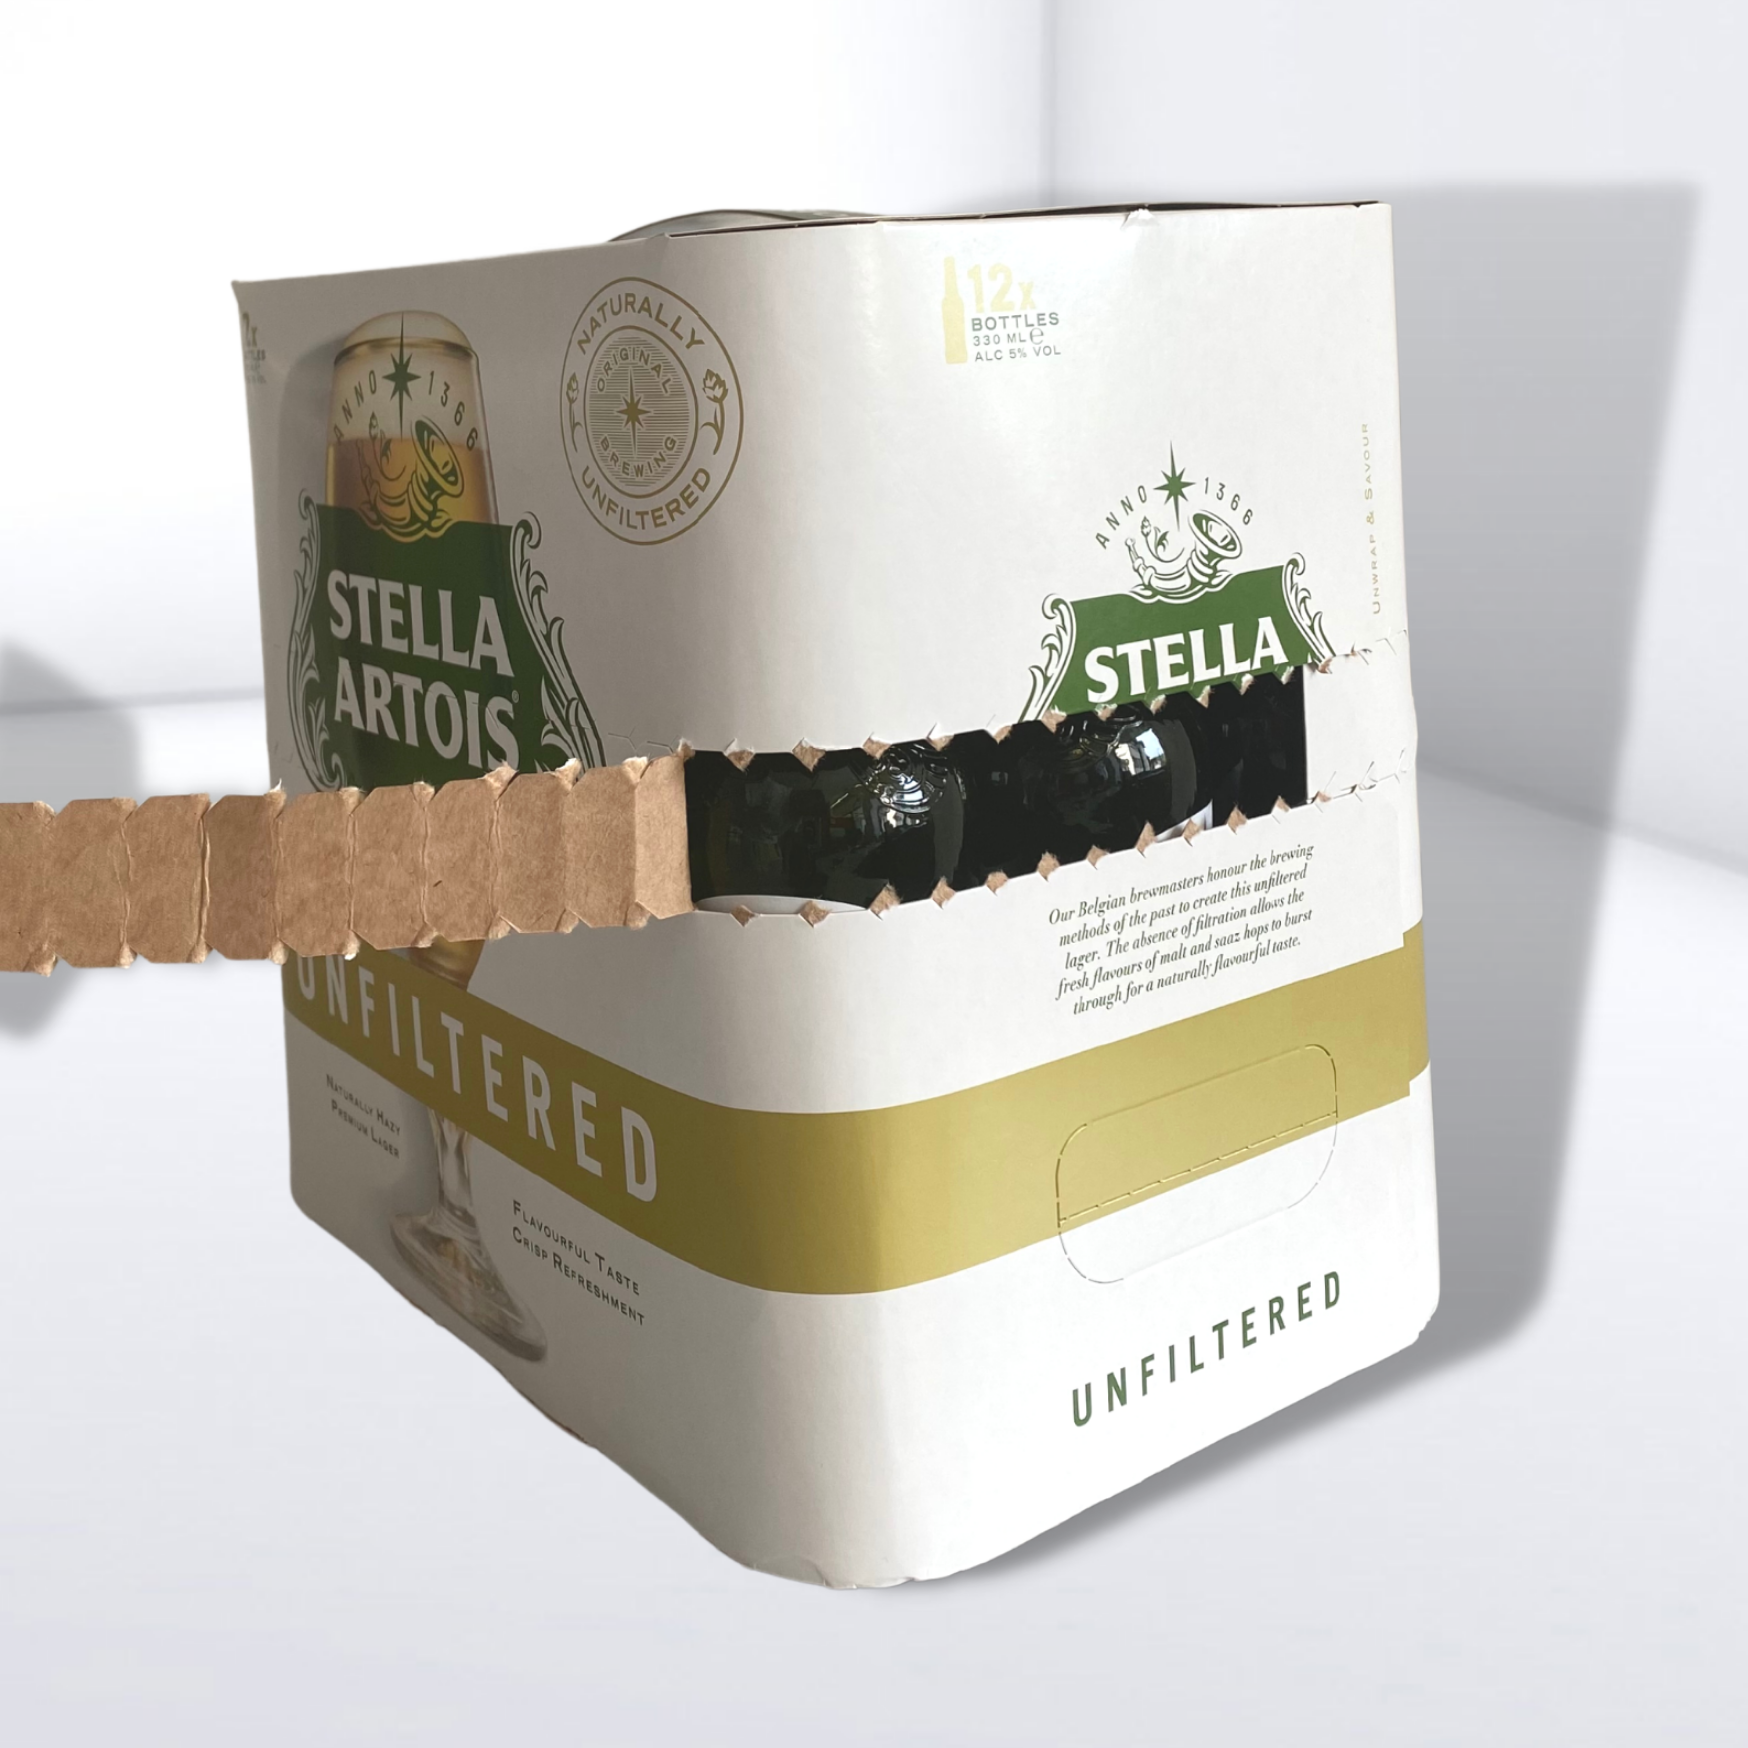 Bottle packaging for Stella Artois